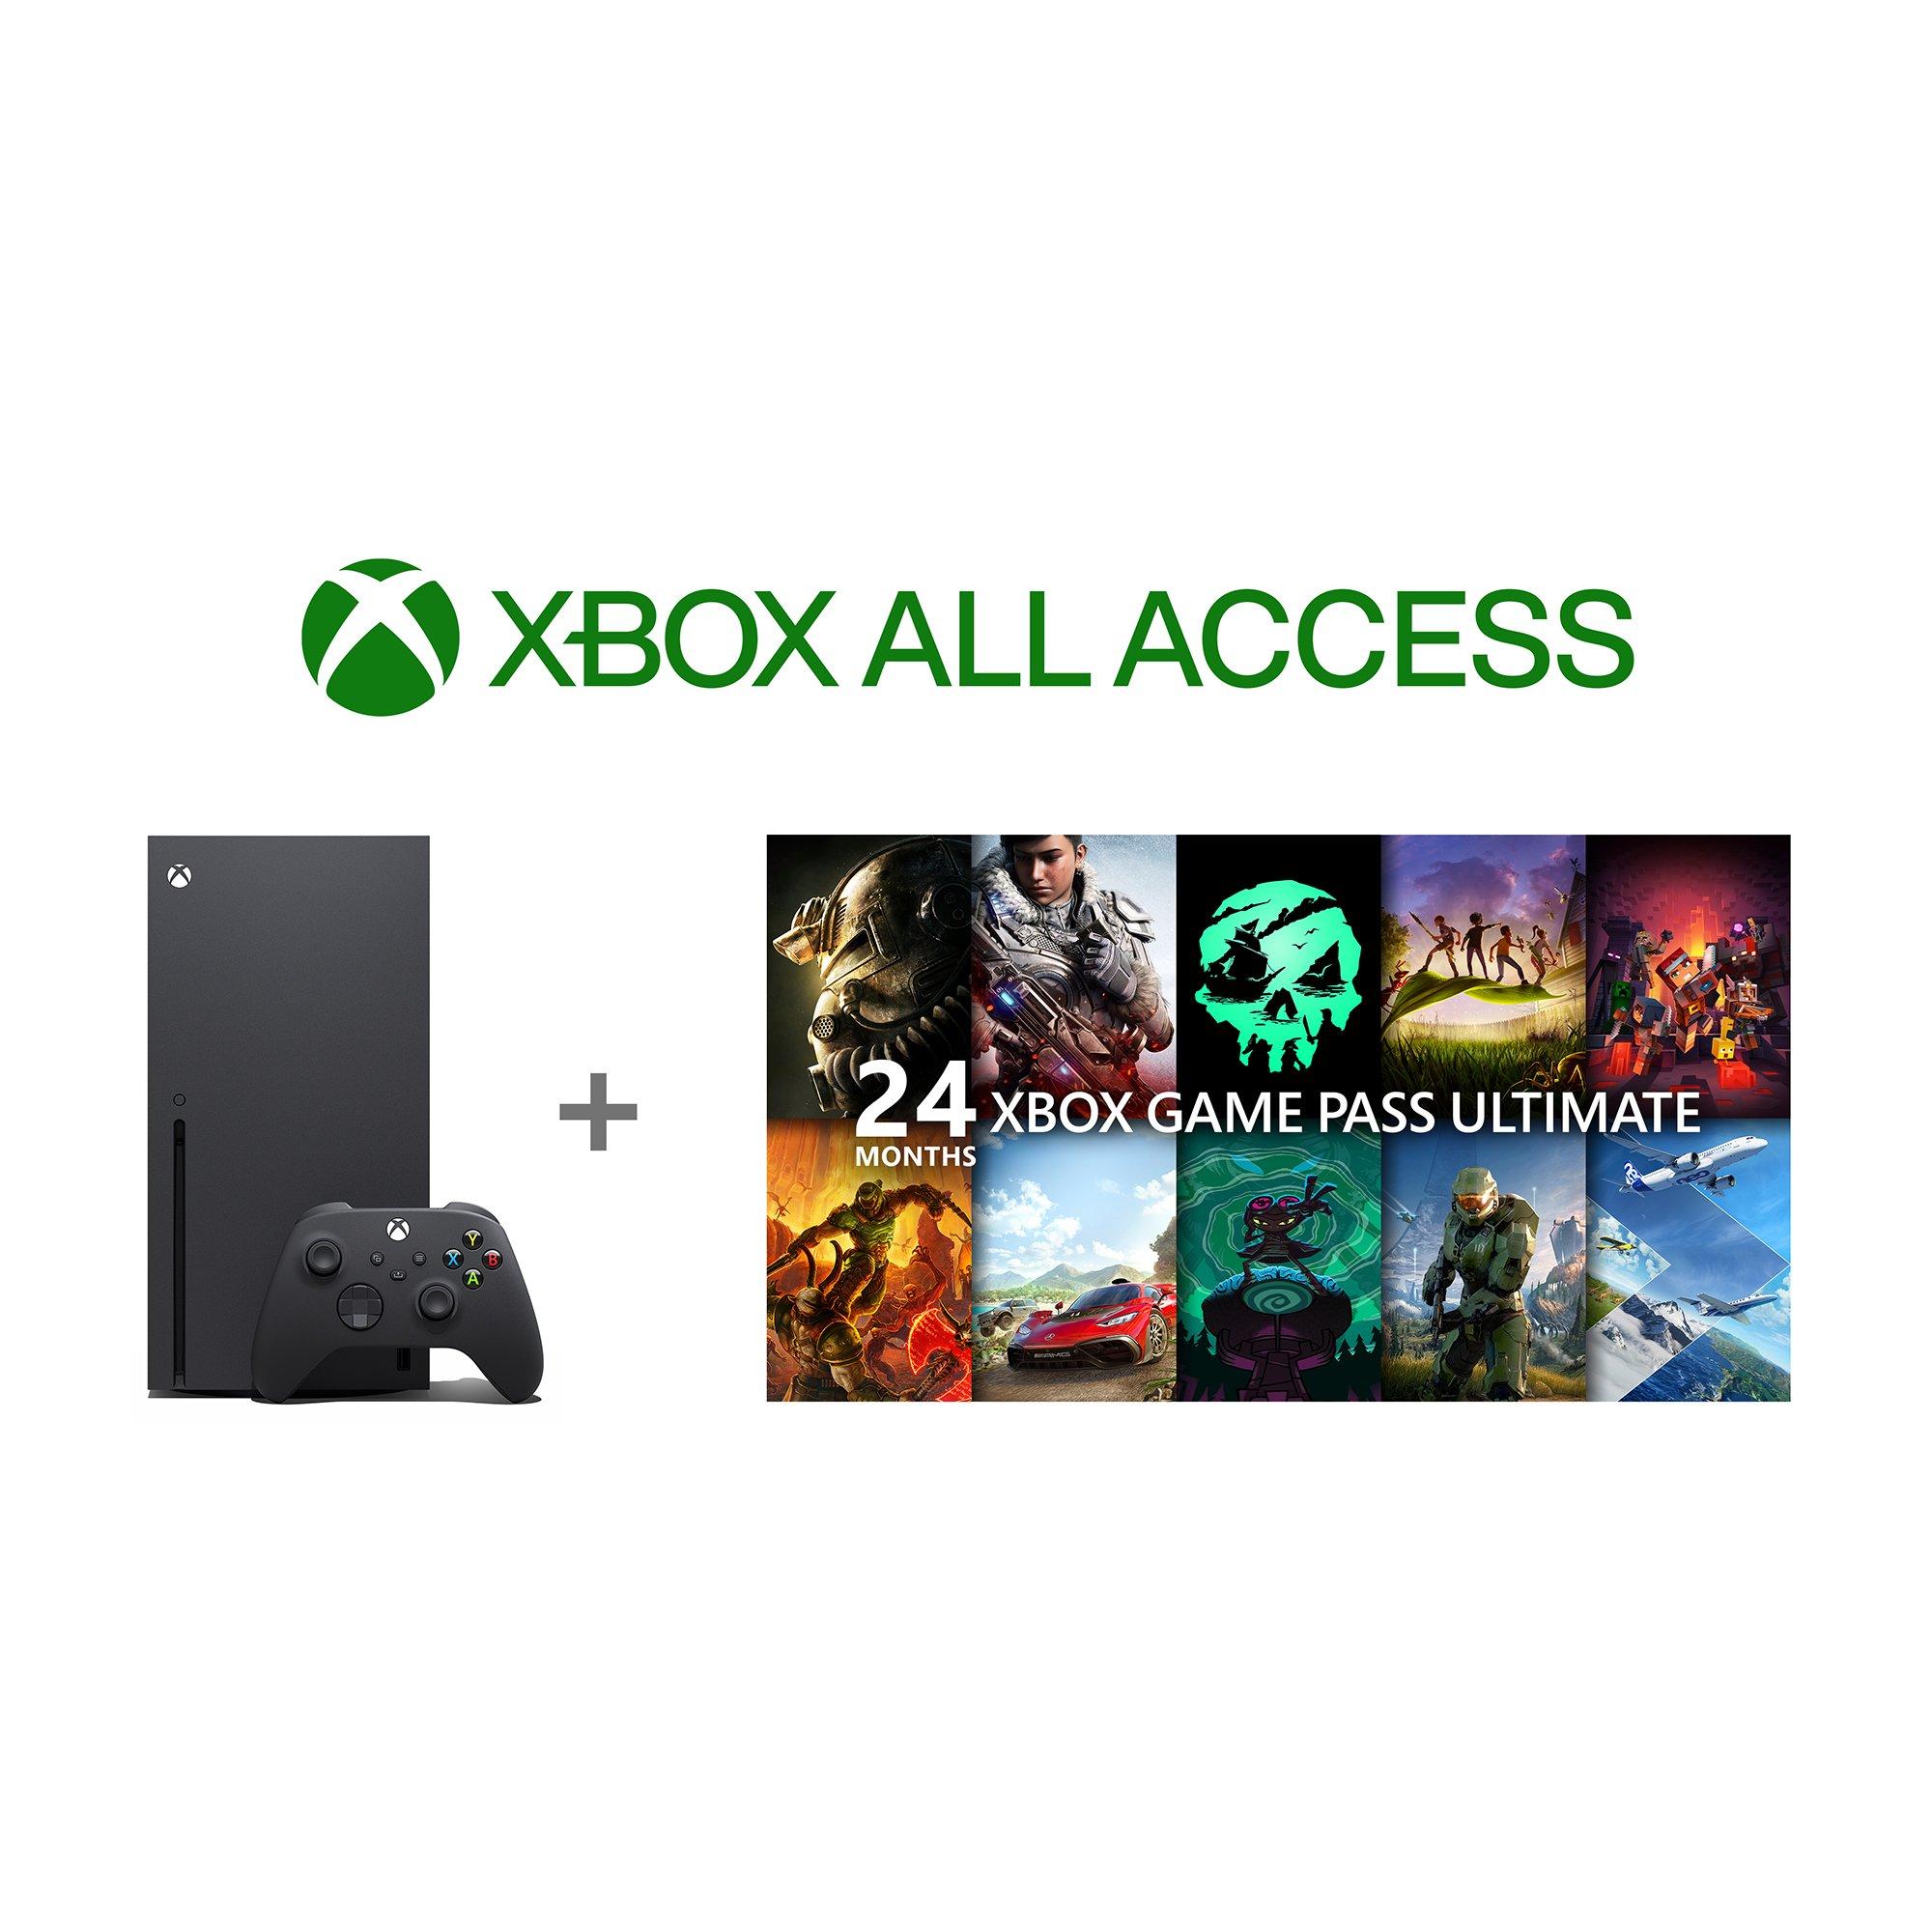 naaimachine kan niet zien typist Microsoft - Xbox Series X Xbox All Access | GameStop